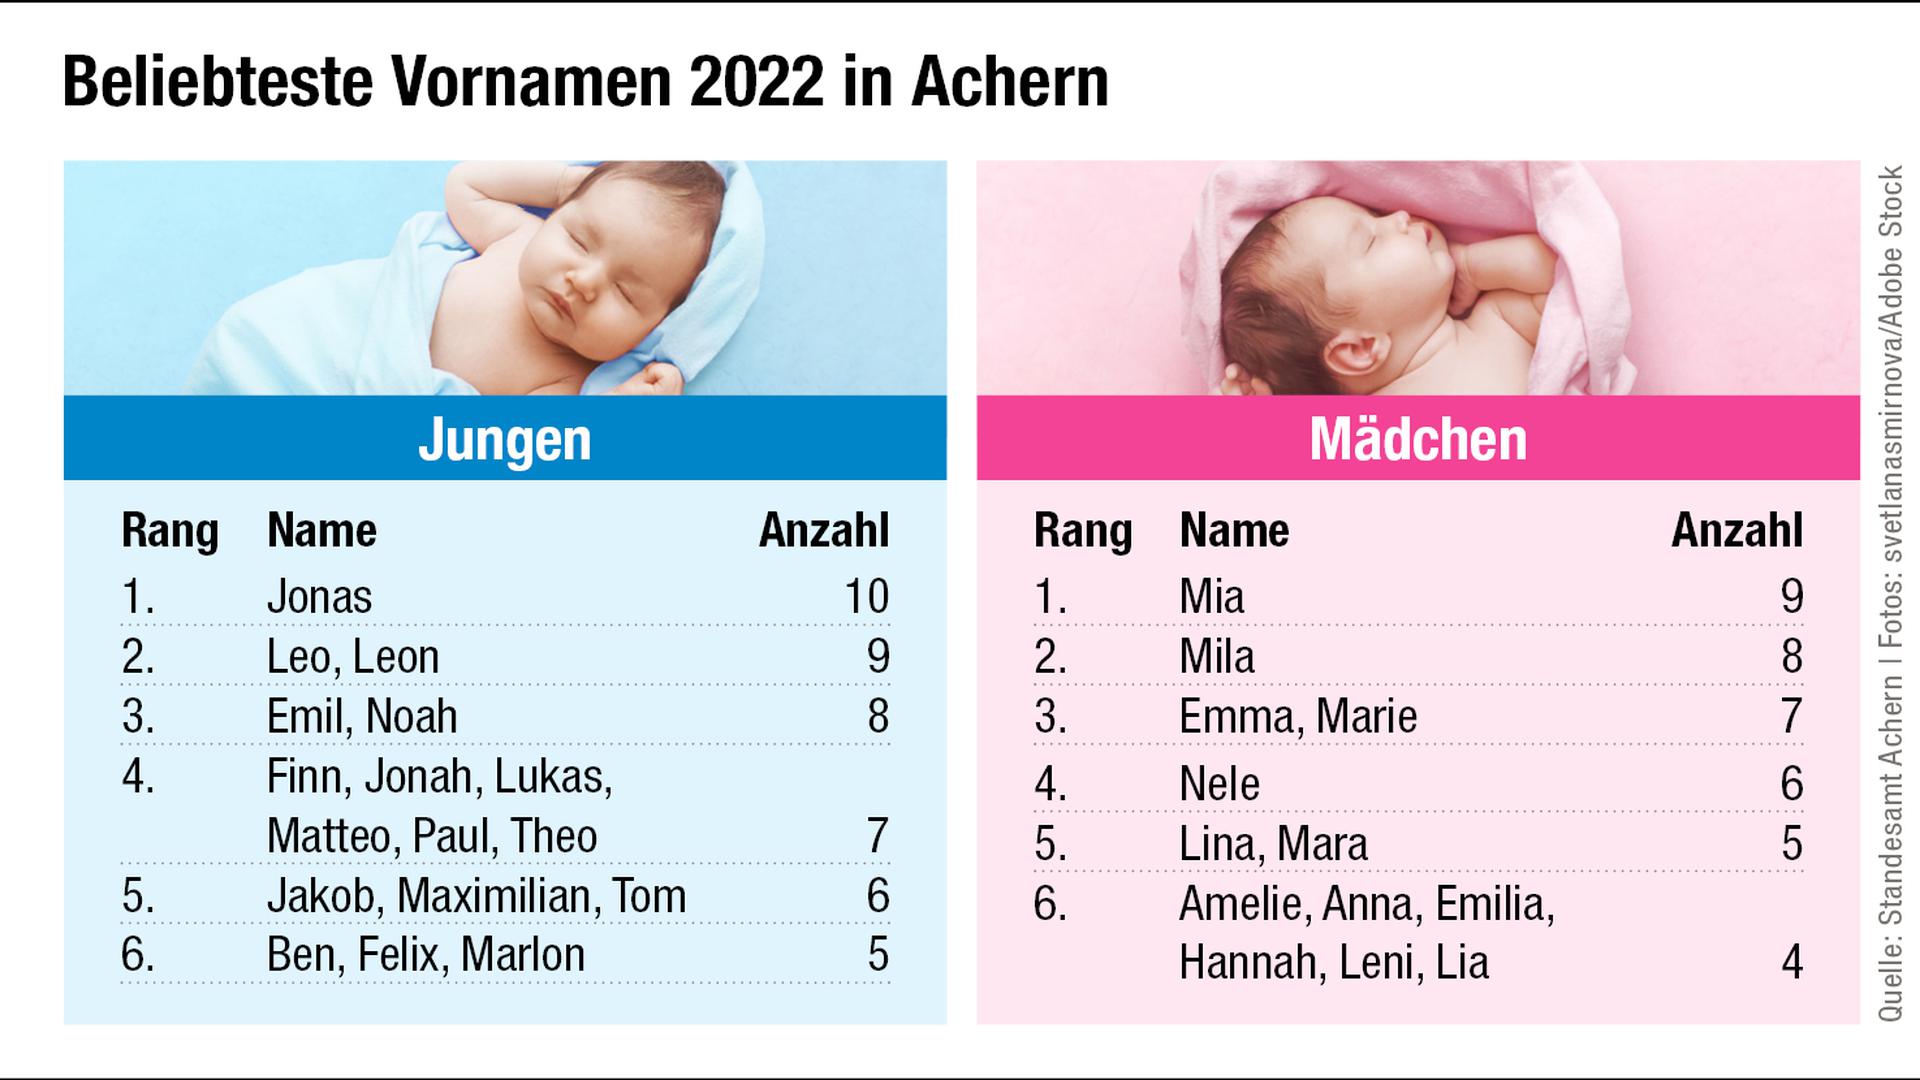 Das waren die beliebtesten Vornamen der Acherner Kinder im vergangenen Jahr